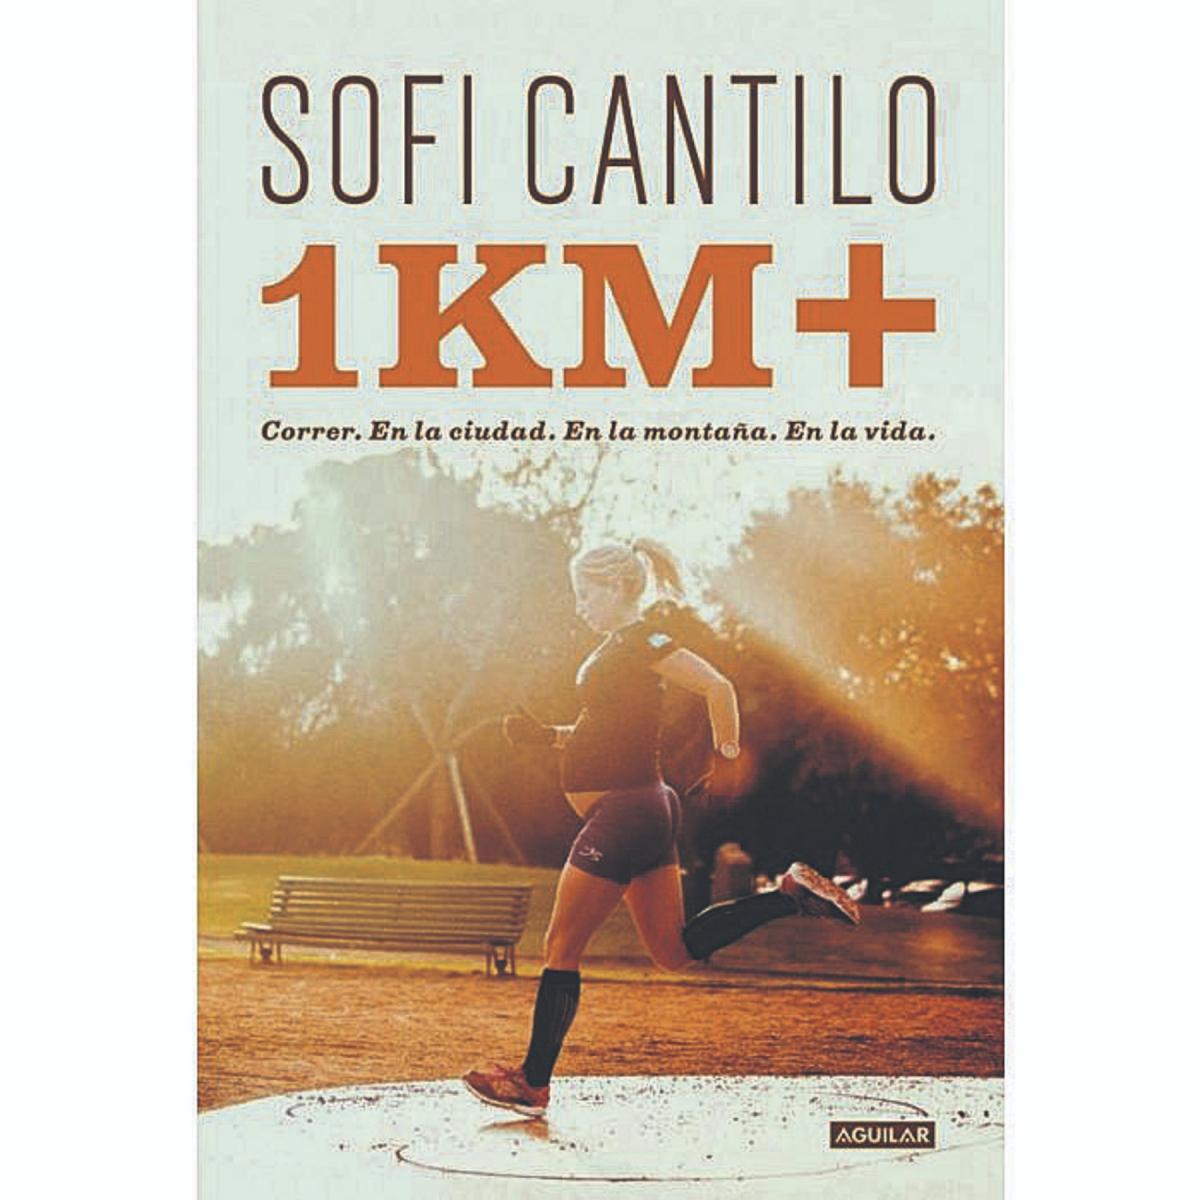 Sofi Cantilo: “Correr me dio las herramientas para vivir”